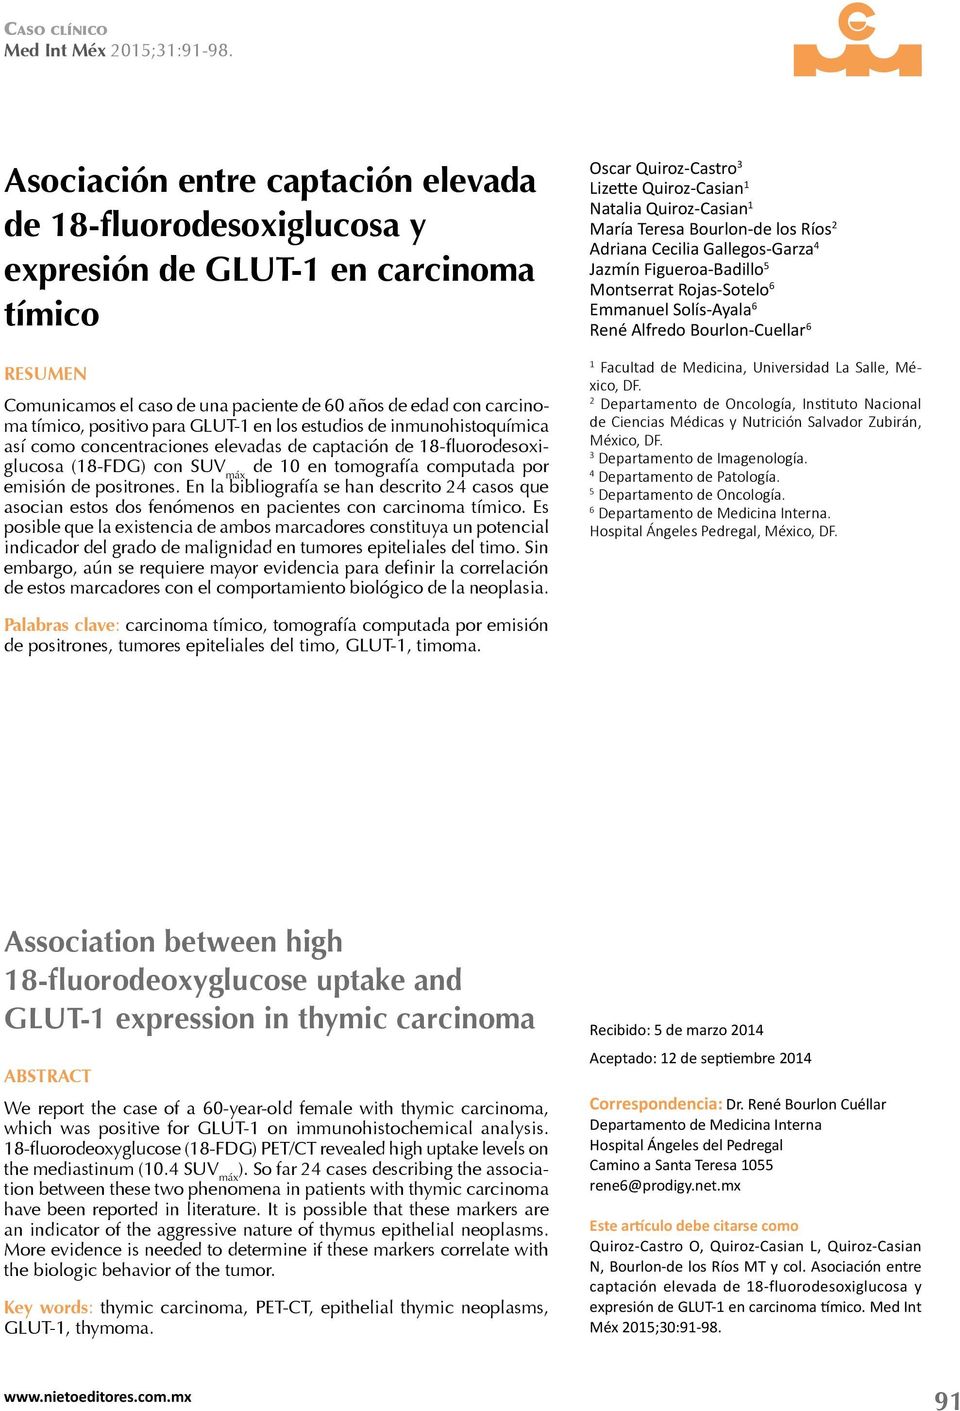 para GLUT-1 en los estudios de inmunohistoquímica así como concentraciones elevadas de captación de 18-fluorodesoxiglucosa (18-FDG) con SUV máx de 10 en tomografía computada por emisión de positrones.